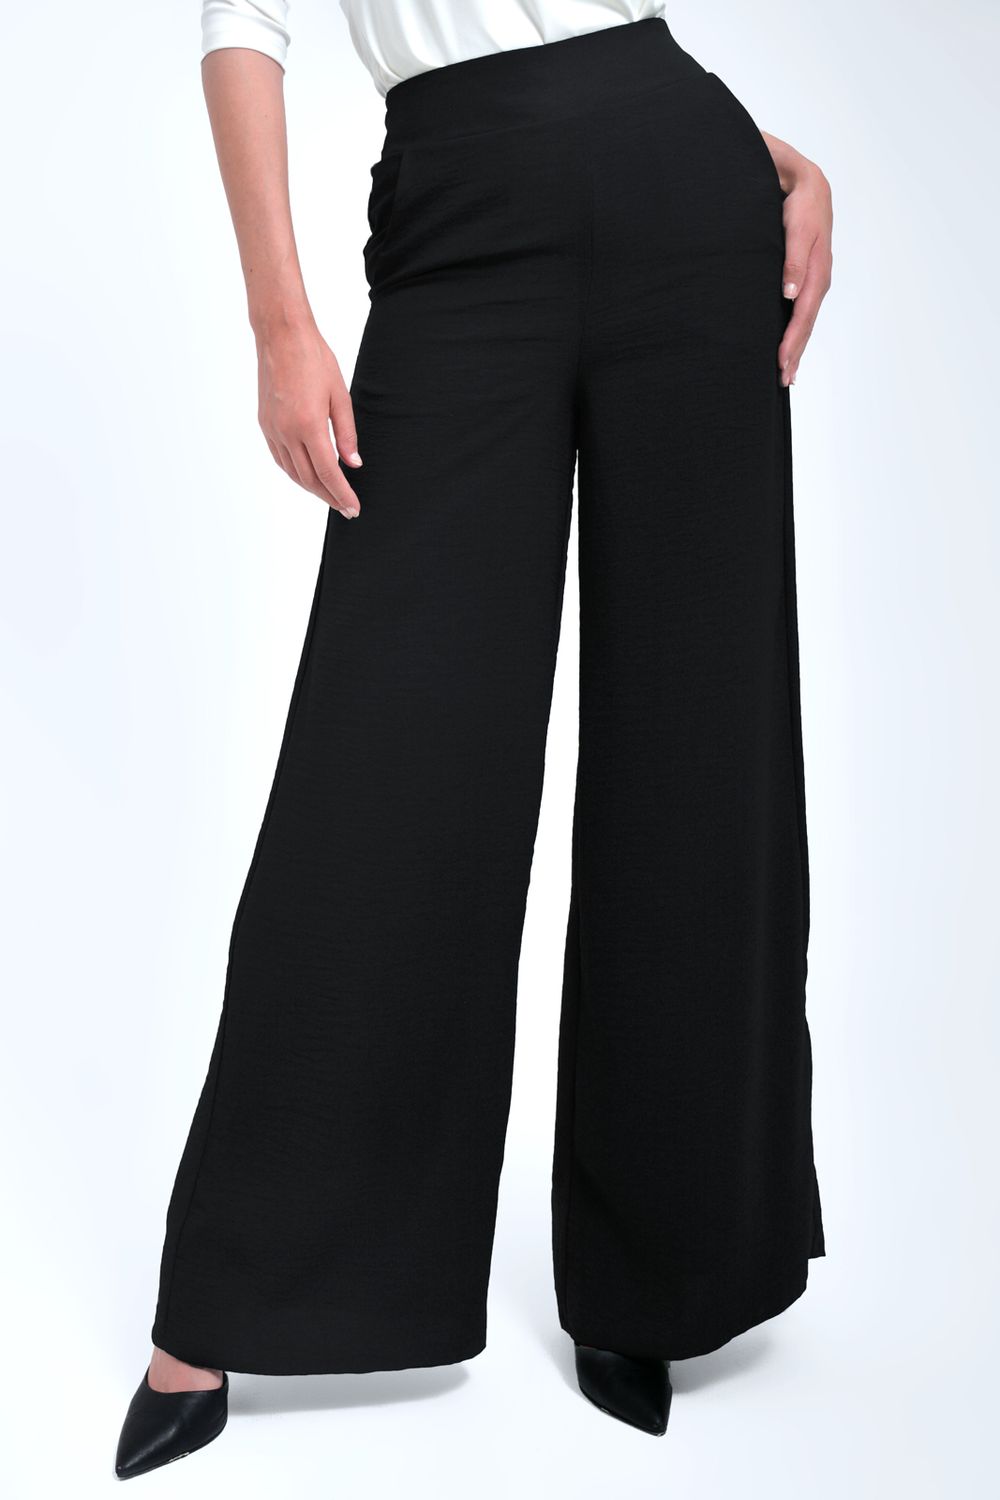 Pantalón Mujer Clásico En Tejido Plano Con Cinturón En Tela - Xuss